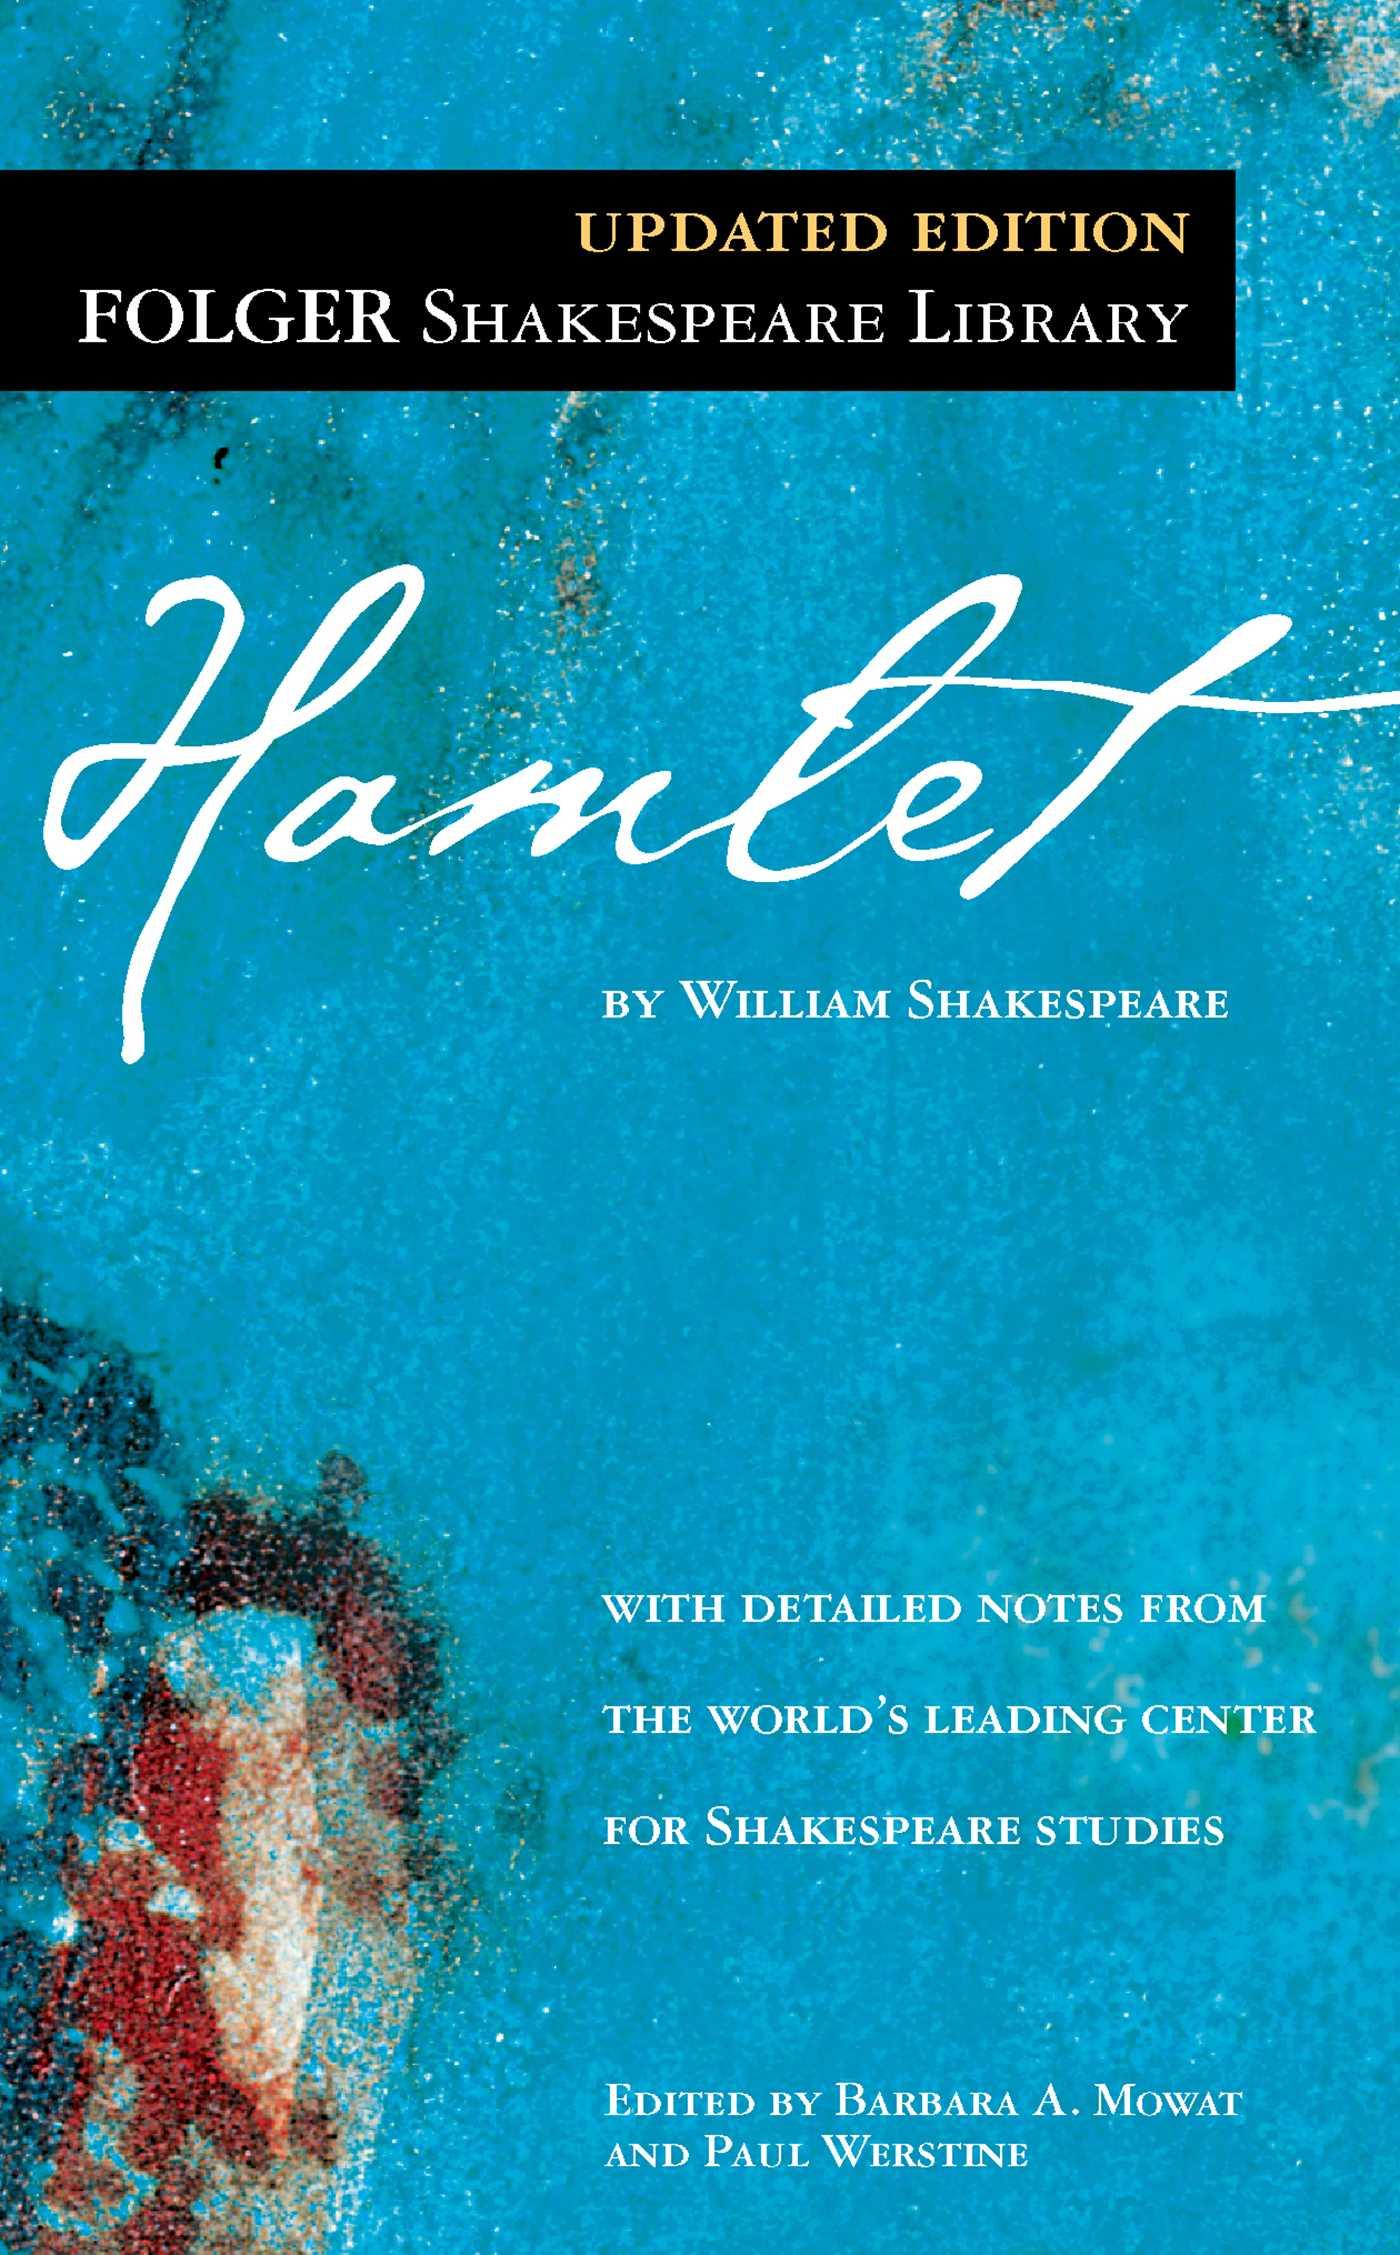 Hamlet / William Shakespeare / Taschenbuch / Kartoniert / Broschiert / Englisch / 2003 / Simon & Schuster / EAN 9780743477123 - Shakespeare, William